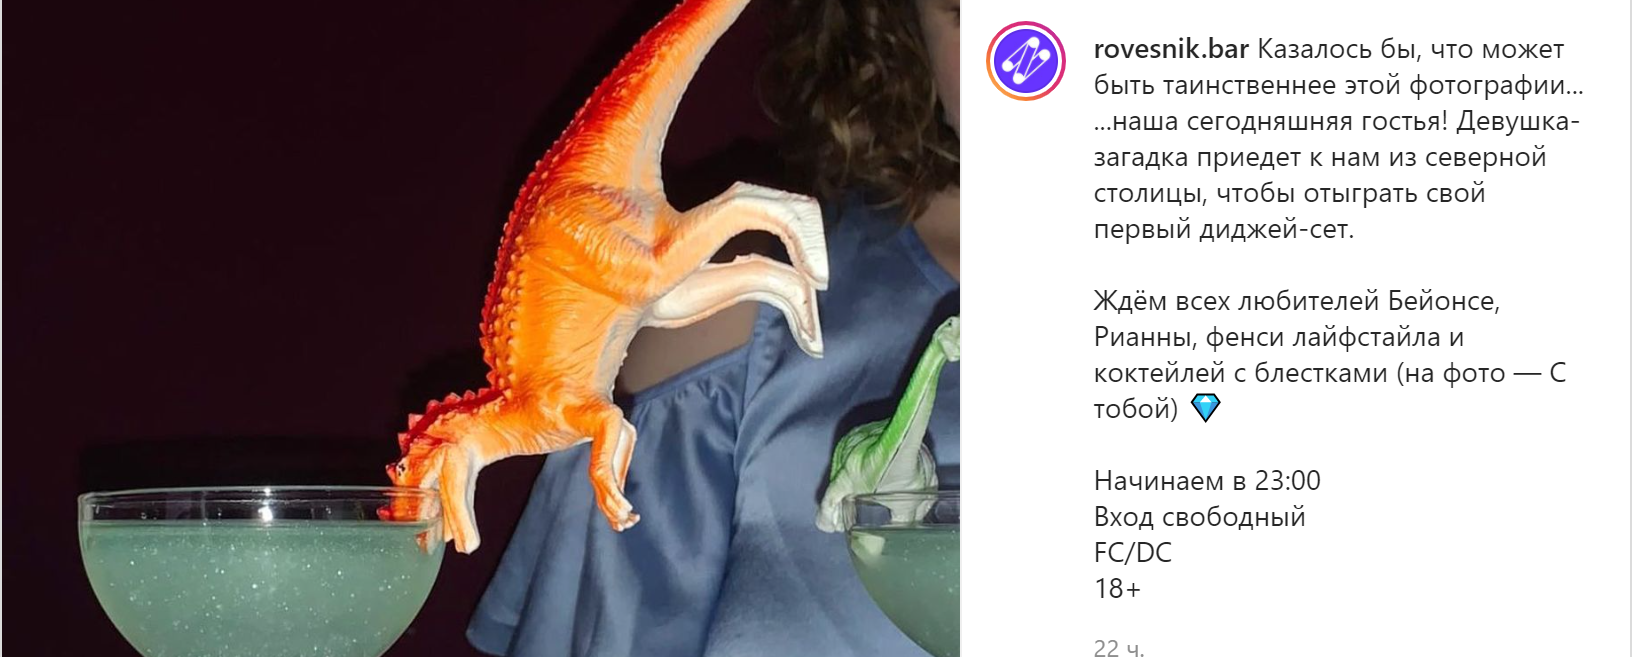 Клуб Ровесник анонсировал выступление Луизы Розовой. Скриншот из инстаграма московского клуба